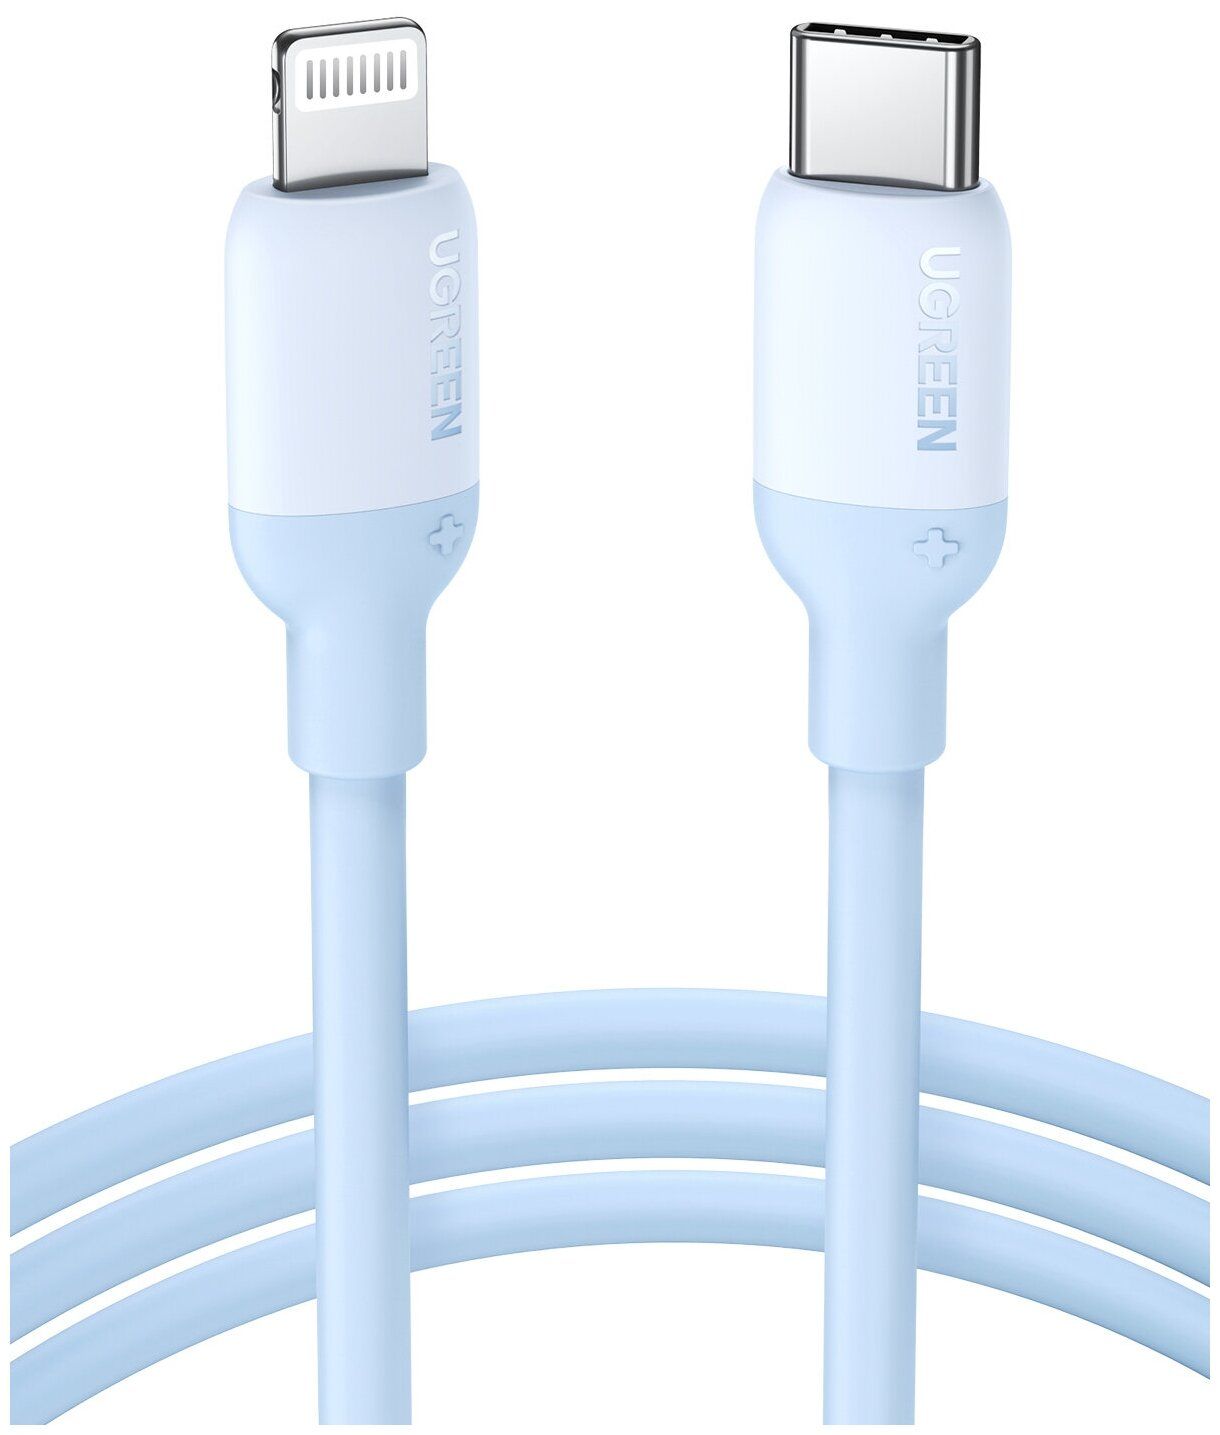 Кабель UGREEN US387 (20313) USB-C to Lightning Silicone Cable. 1 м. темно-синий кабель зарядный rogue для ios usb кабель type c для телефона кабель зарядного устройства для iphone xiaomi кабель для передачи данных 1 2 м